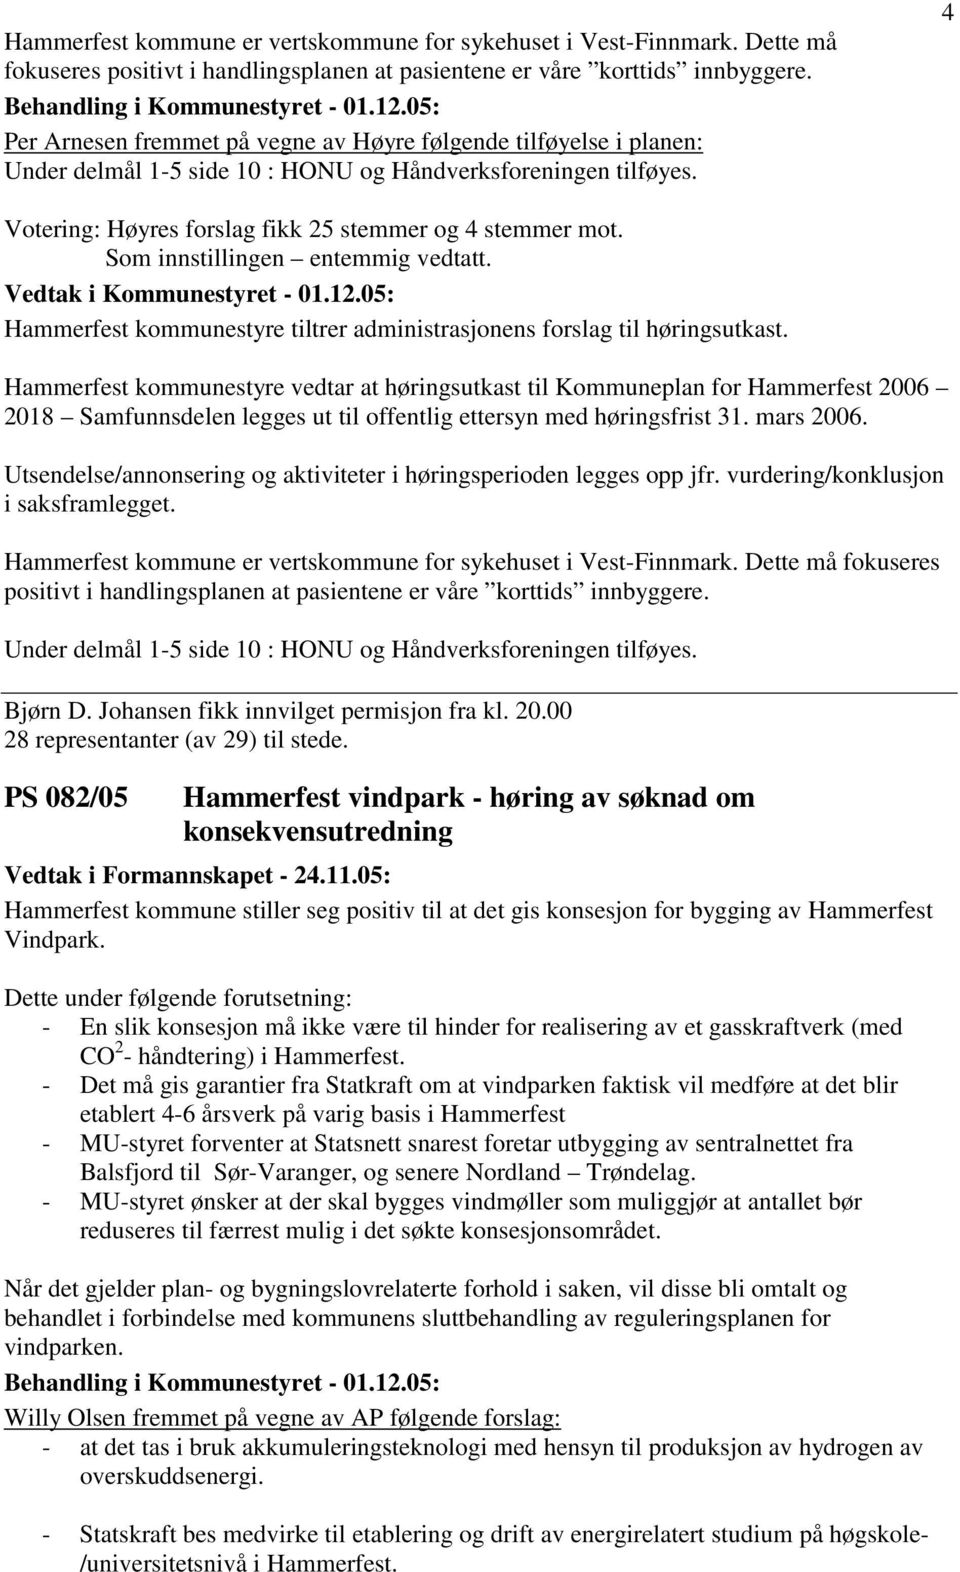 Som innstillingen entemmig vedtatt. Hammerfest kommunestyre tiltrer administrasjonens forslag til høringsutkast.